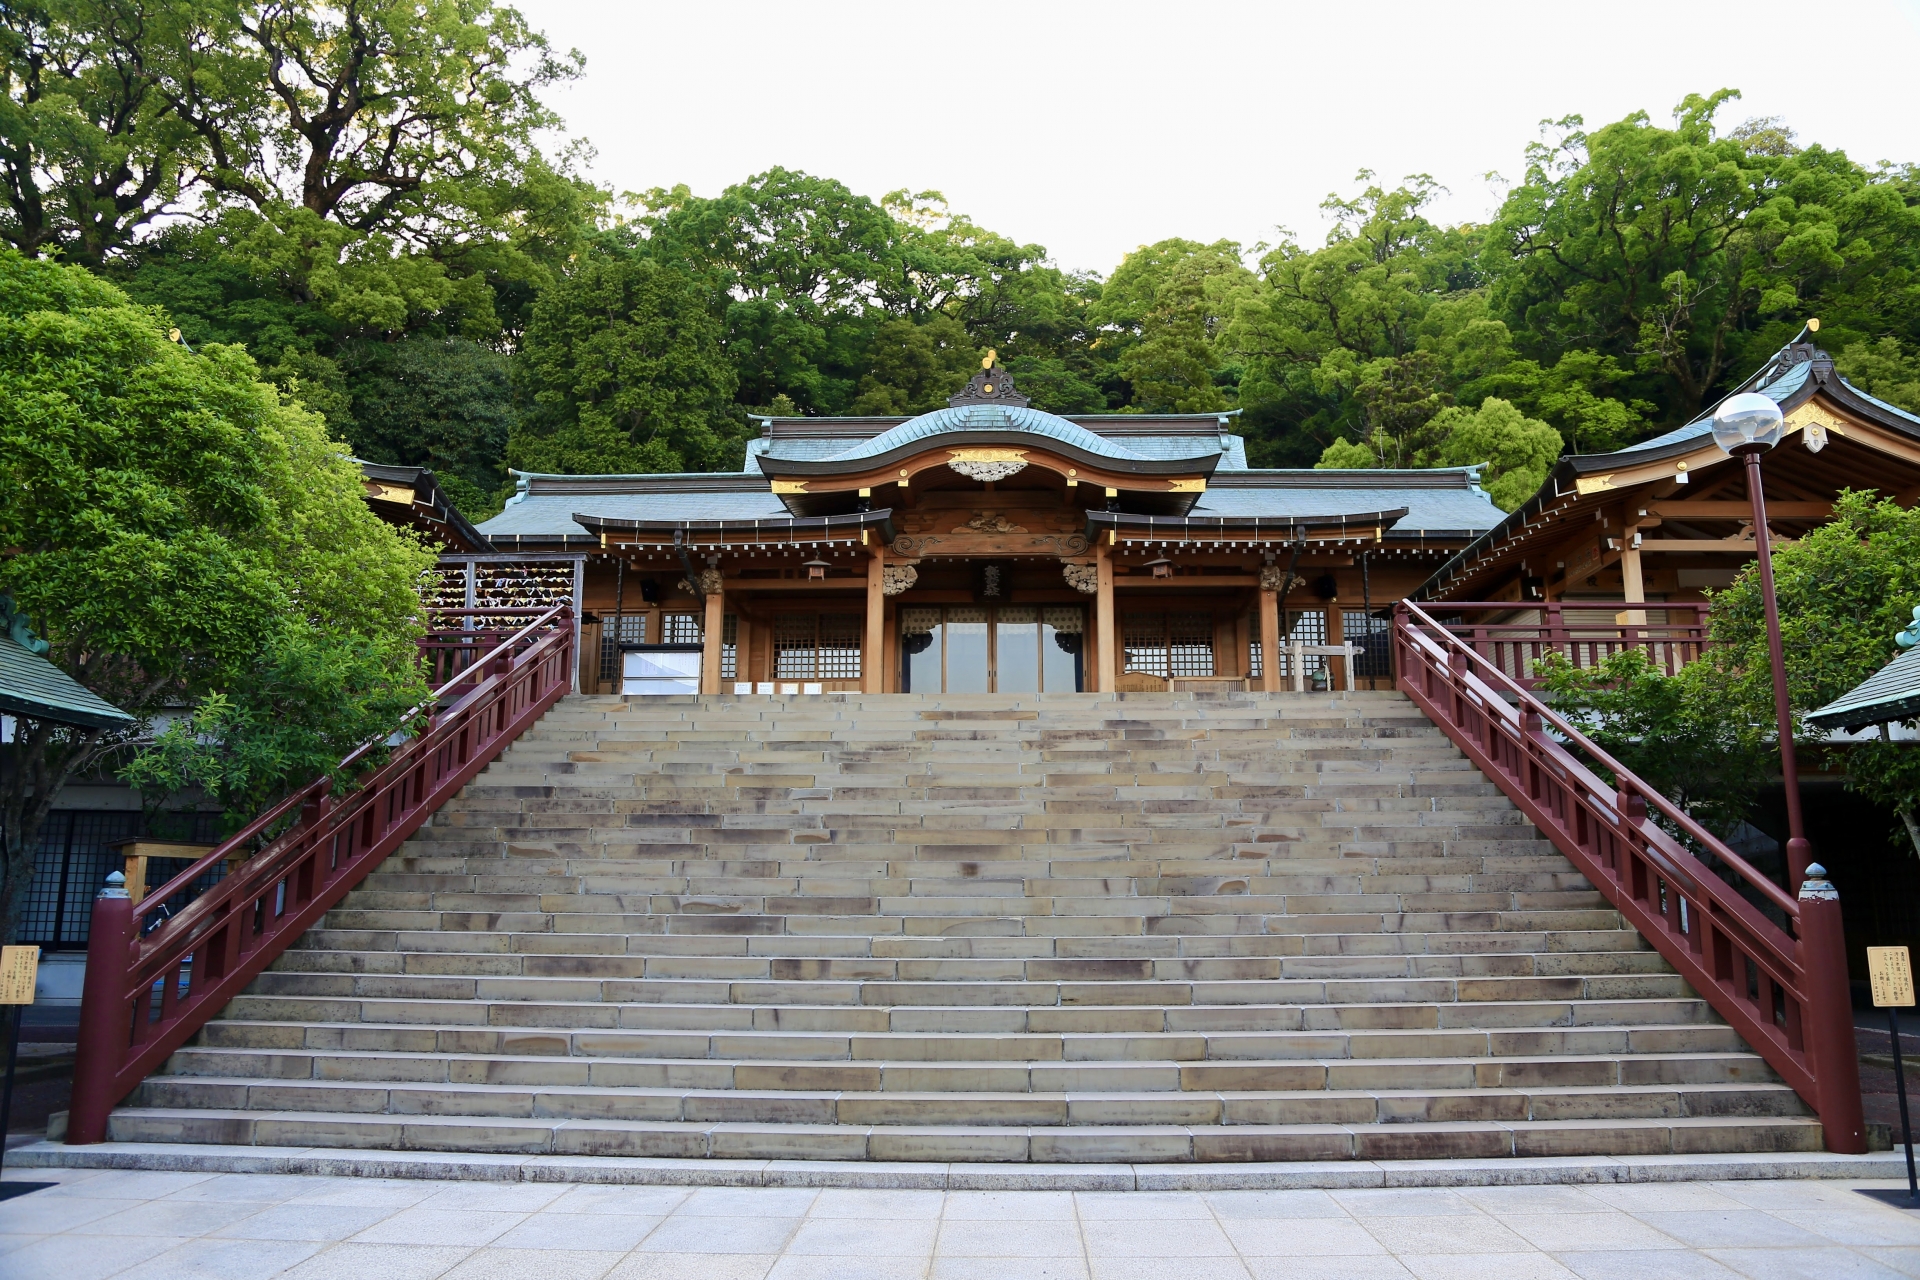 諏訪神社 長崎 の初詣 21年参拝時間やコロナ対策など紹介 情報発信ブログサイト Blue Rose